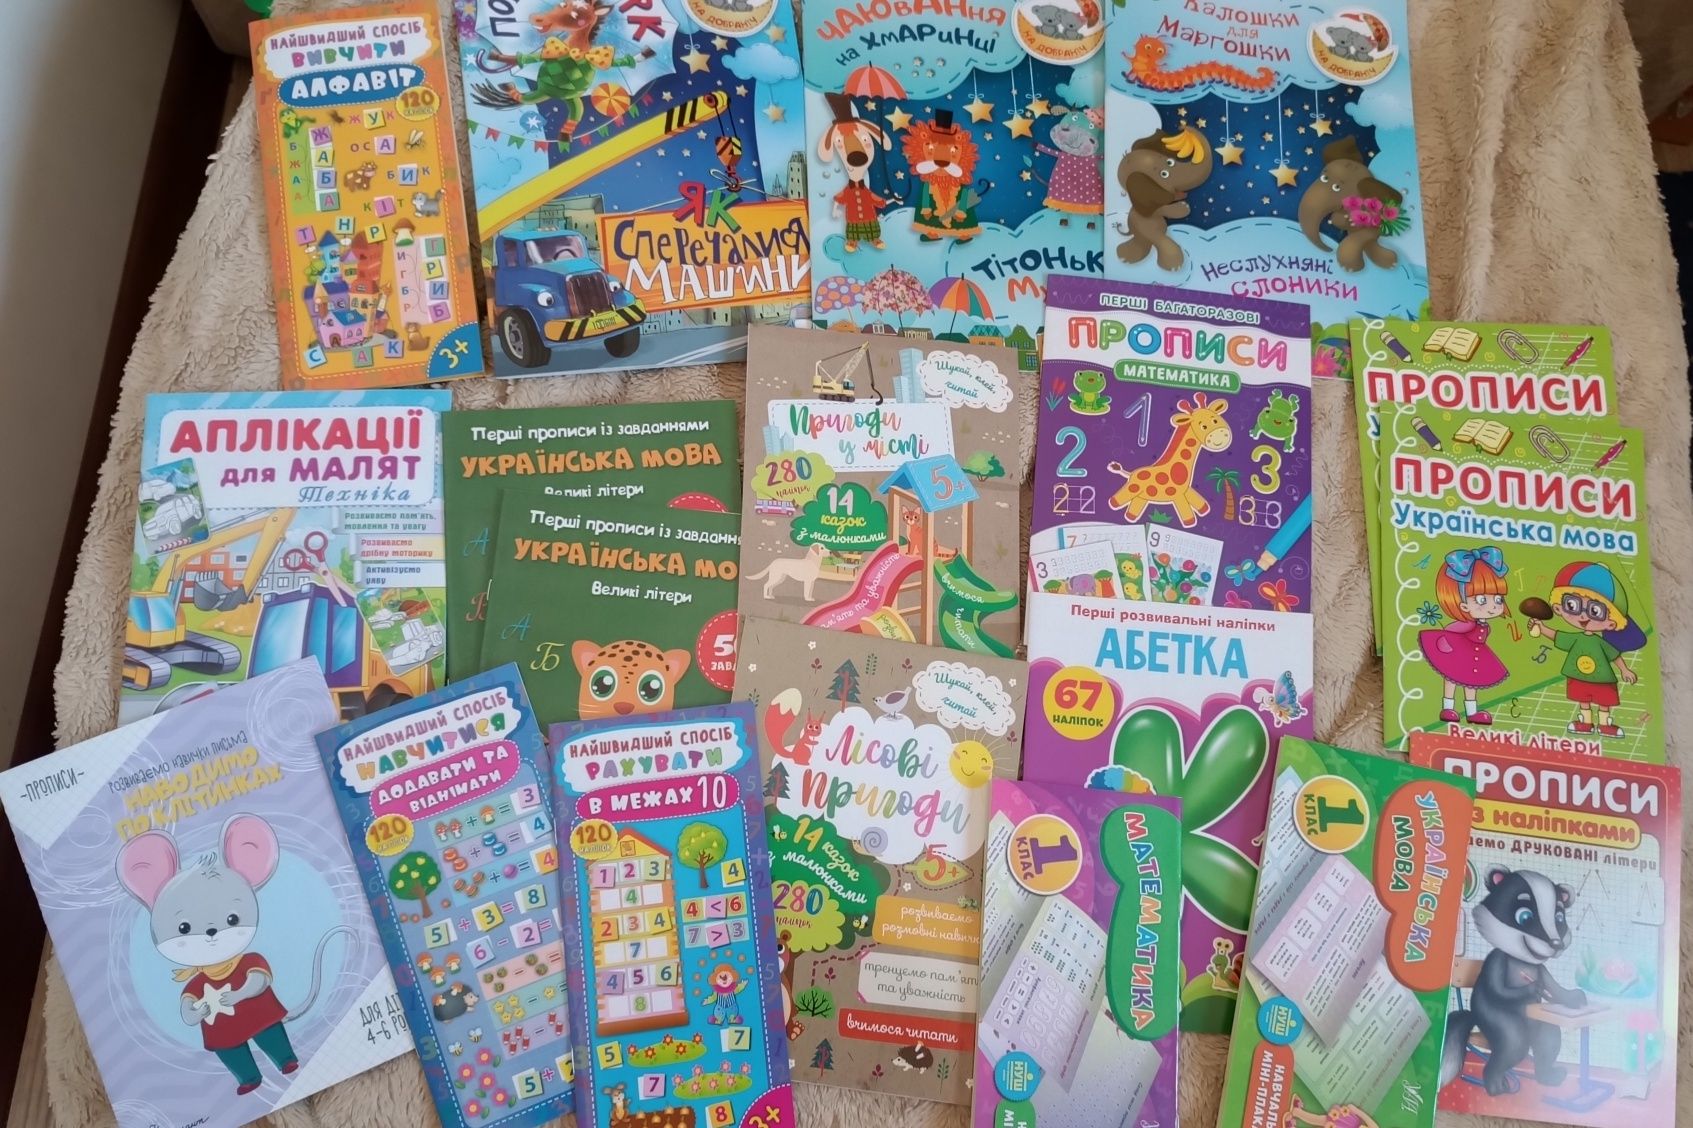 Wyprzedaż ukraińskich zeszytów dla dzieci w wieku 3-6 lat.